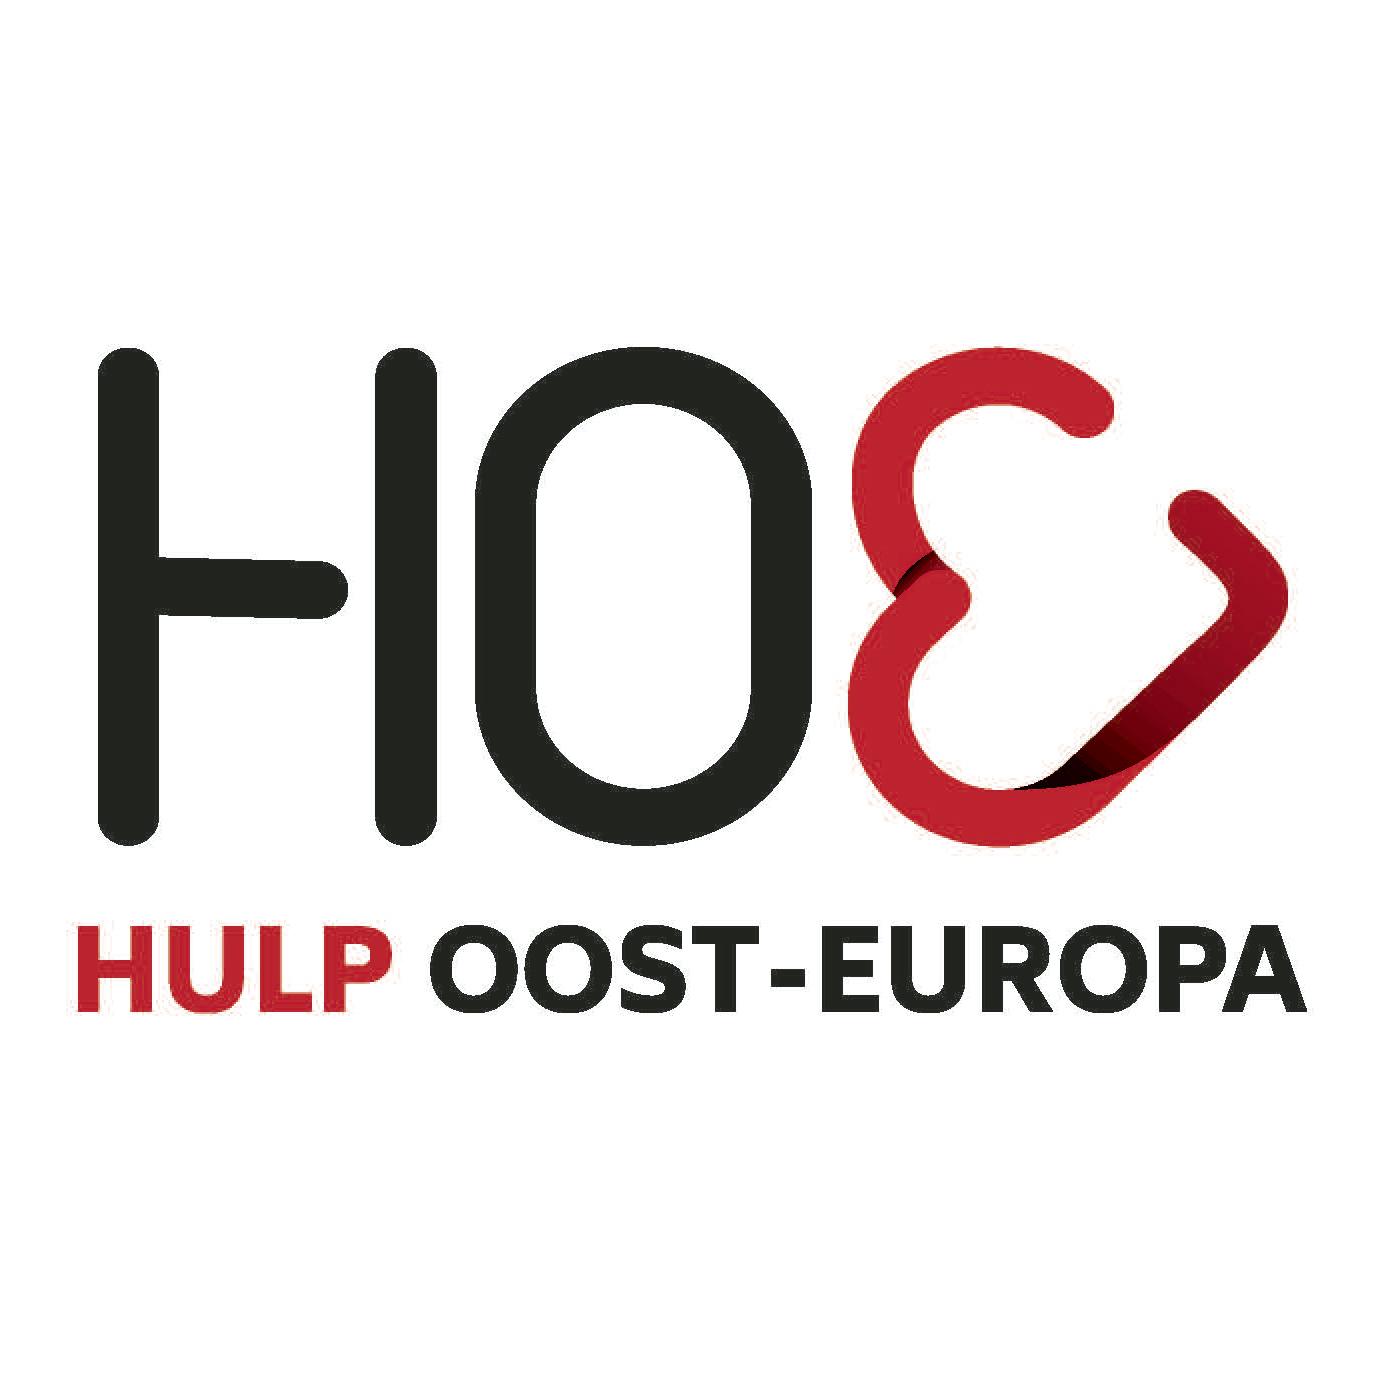 HOE (Hulp Oost-Europa) Logo